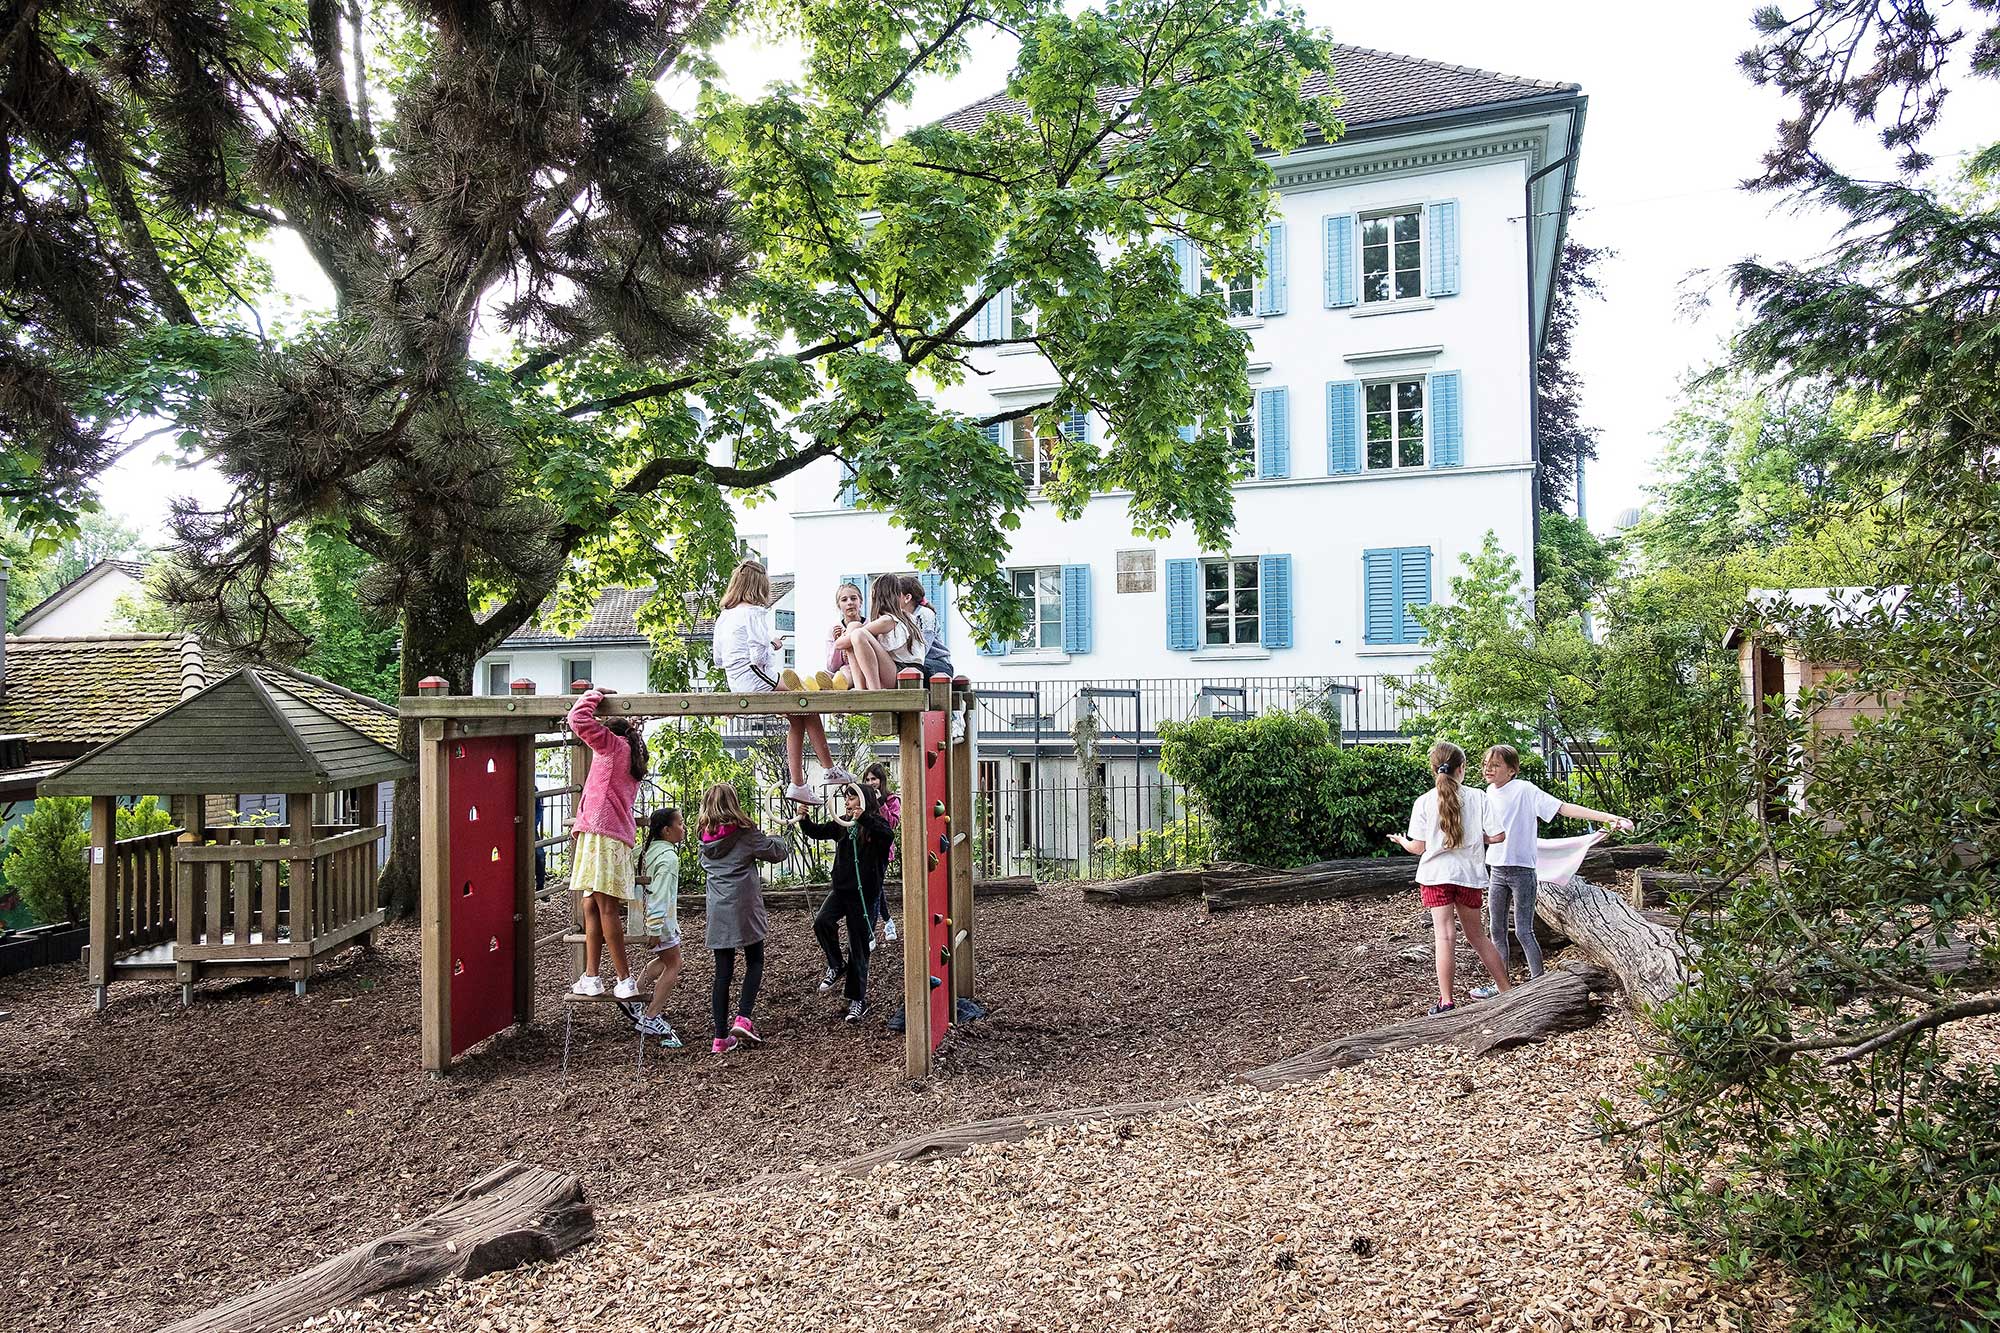 Kinder spielen auf dem Spielplatz der Schule. Im Hintergrund steht ein grosser Baum.	